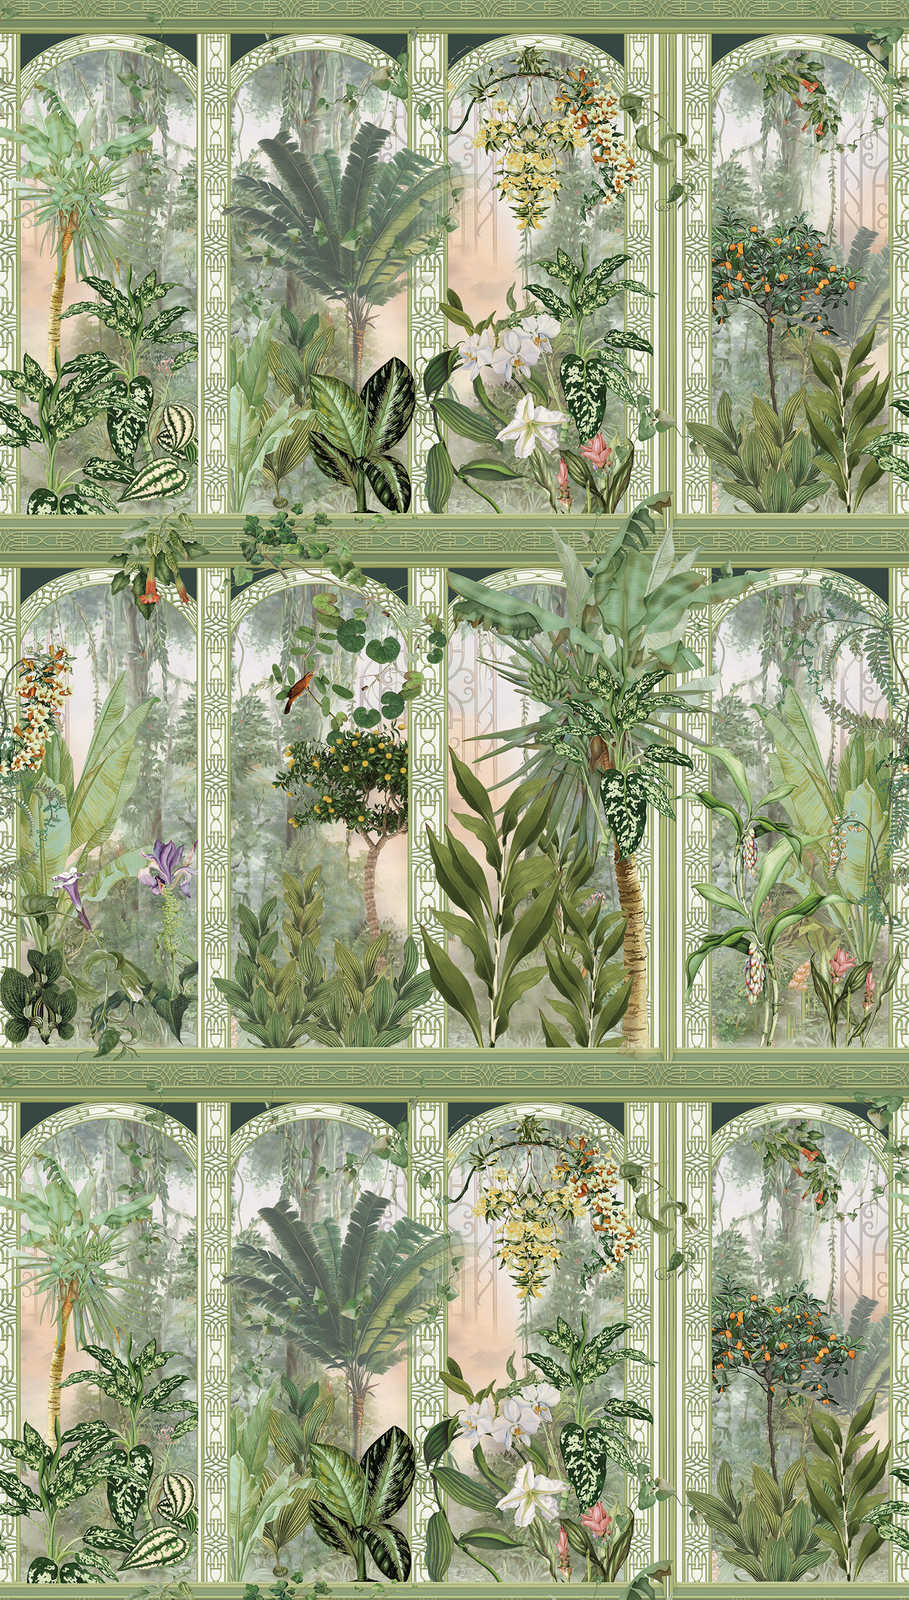             Onderlaag behang jungle motief met grote bladeren en bloemen - groen, bruin, wit
        